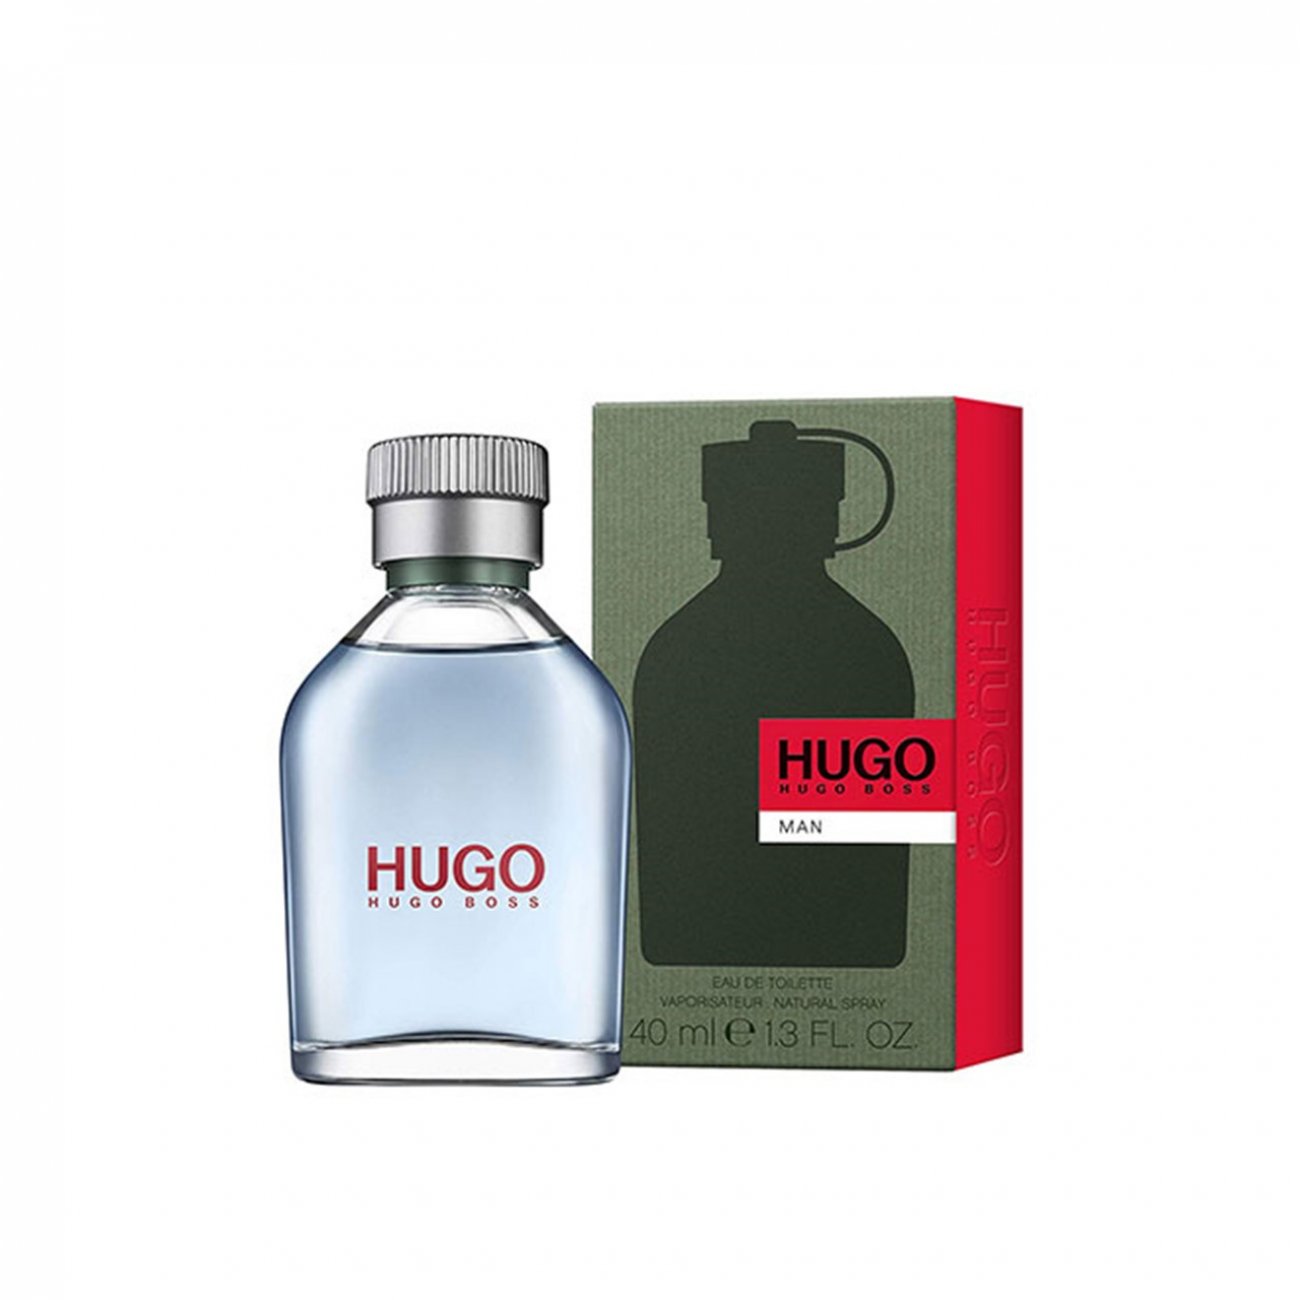 St Algebraisk har Buy Hugo Boss Hugo Man Eau de Toilette 40ml (1.4fl oz) · USA